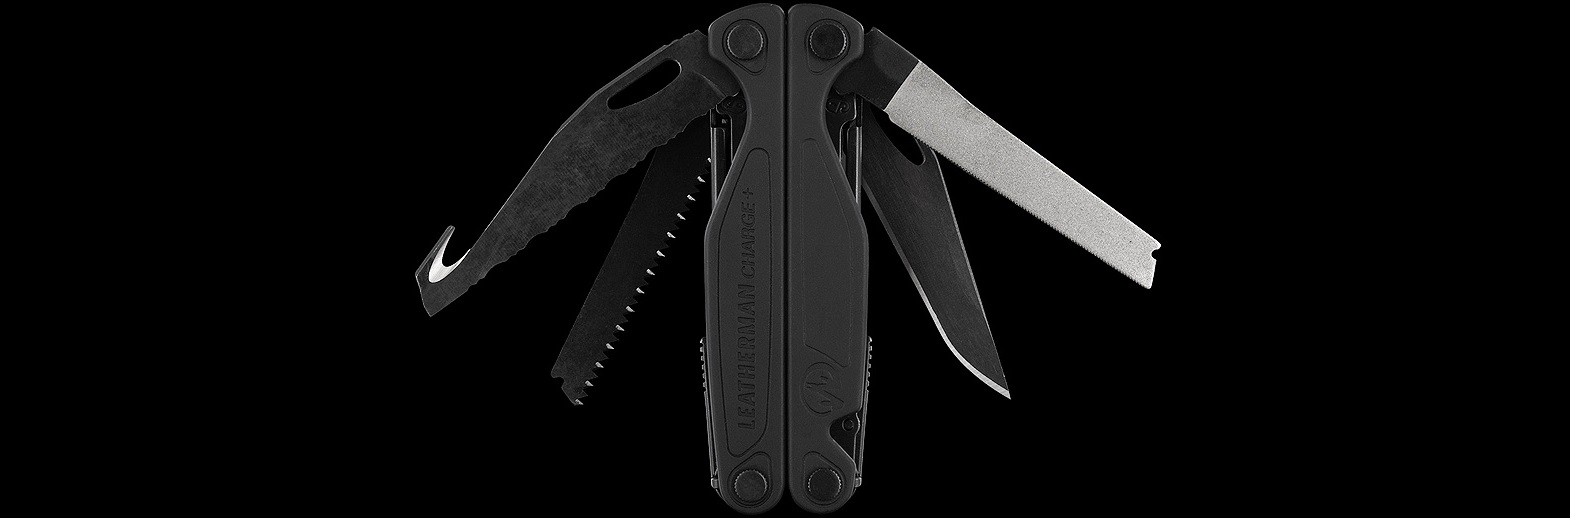 Мультитул Leatherman Charge Plus Black 832601 із лезом ножа зі сталі 154CM